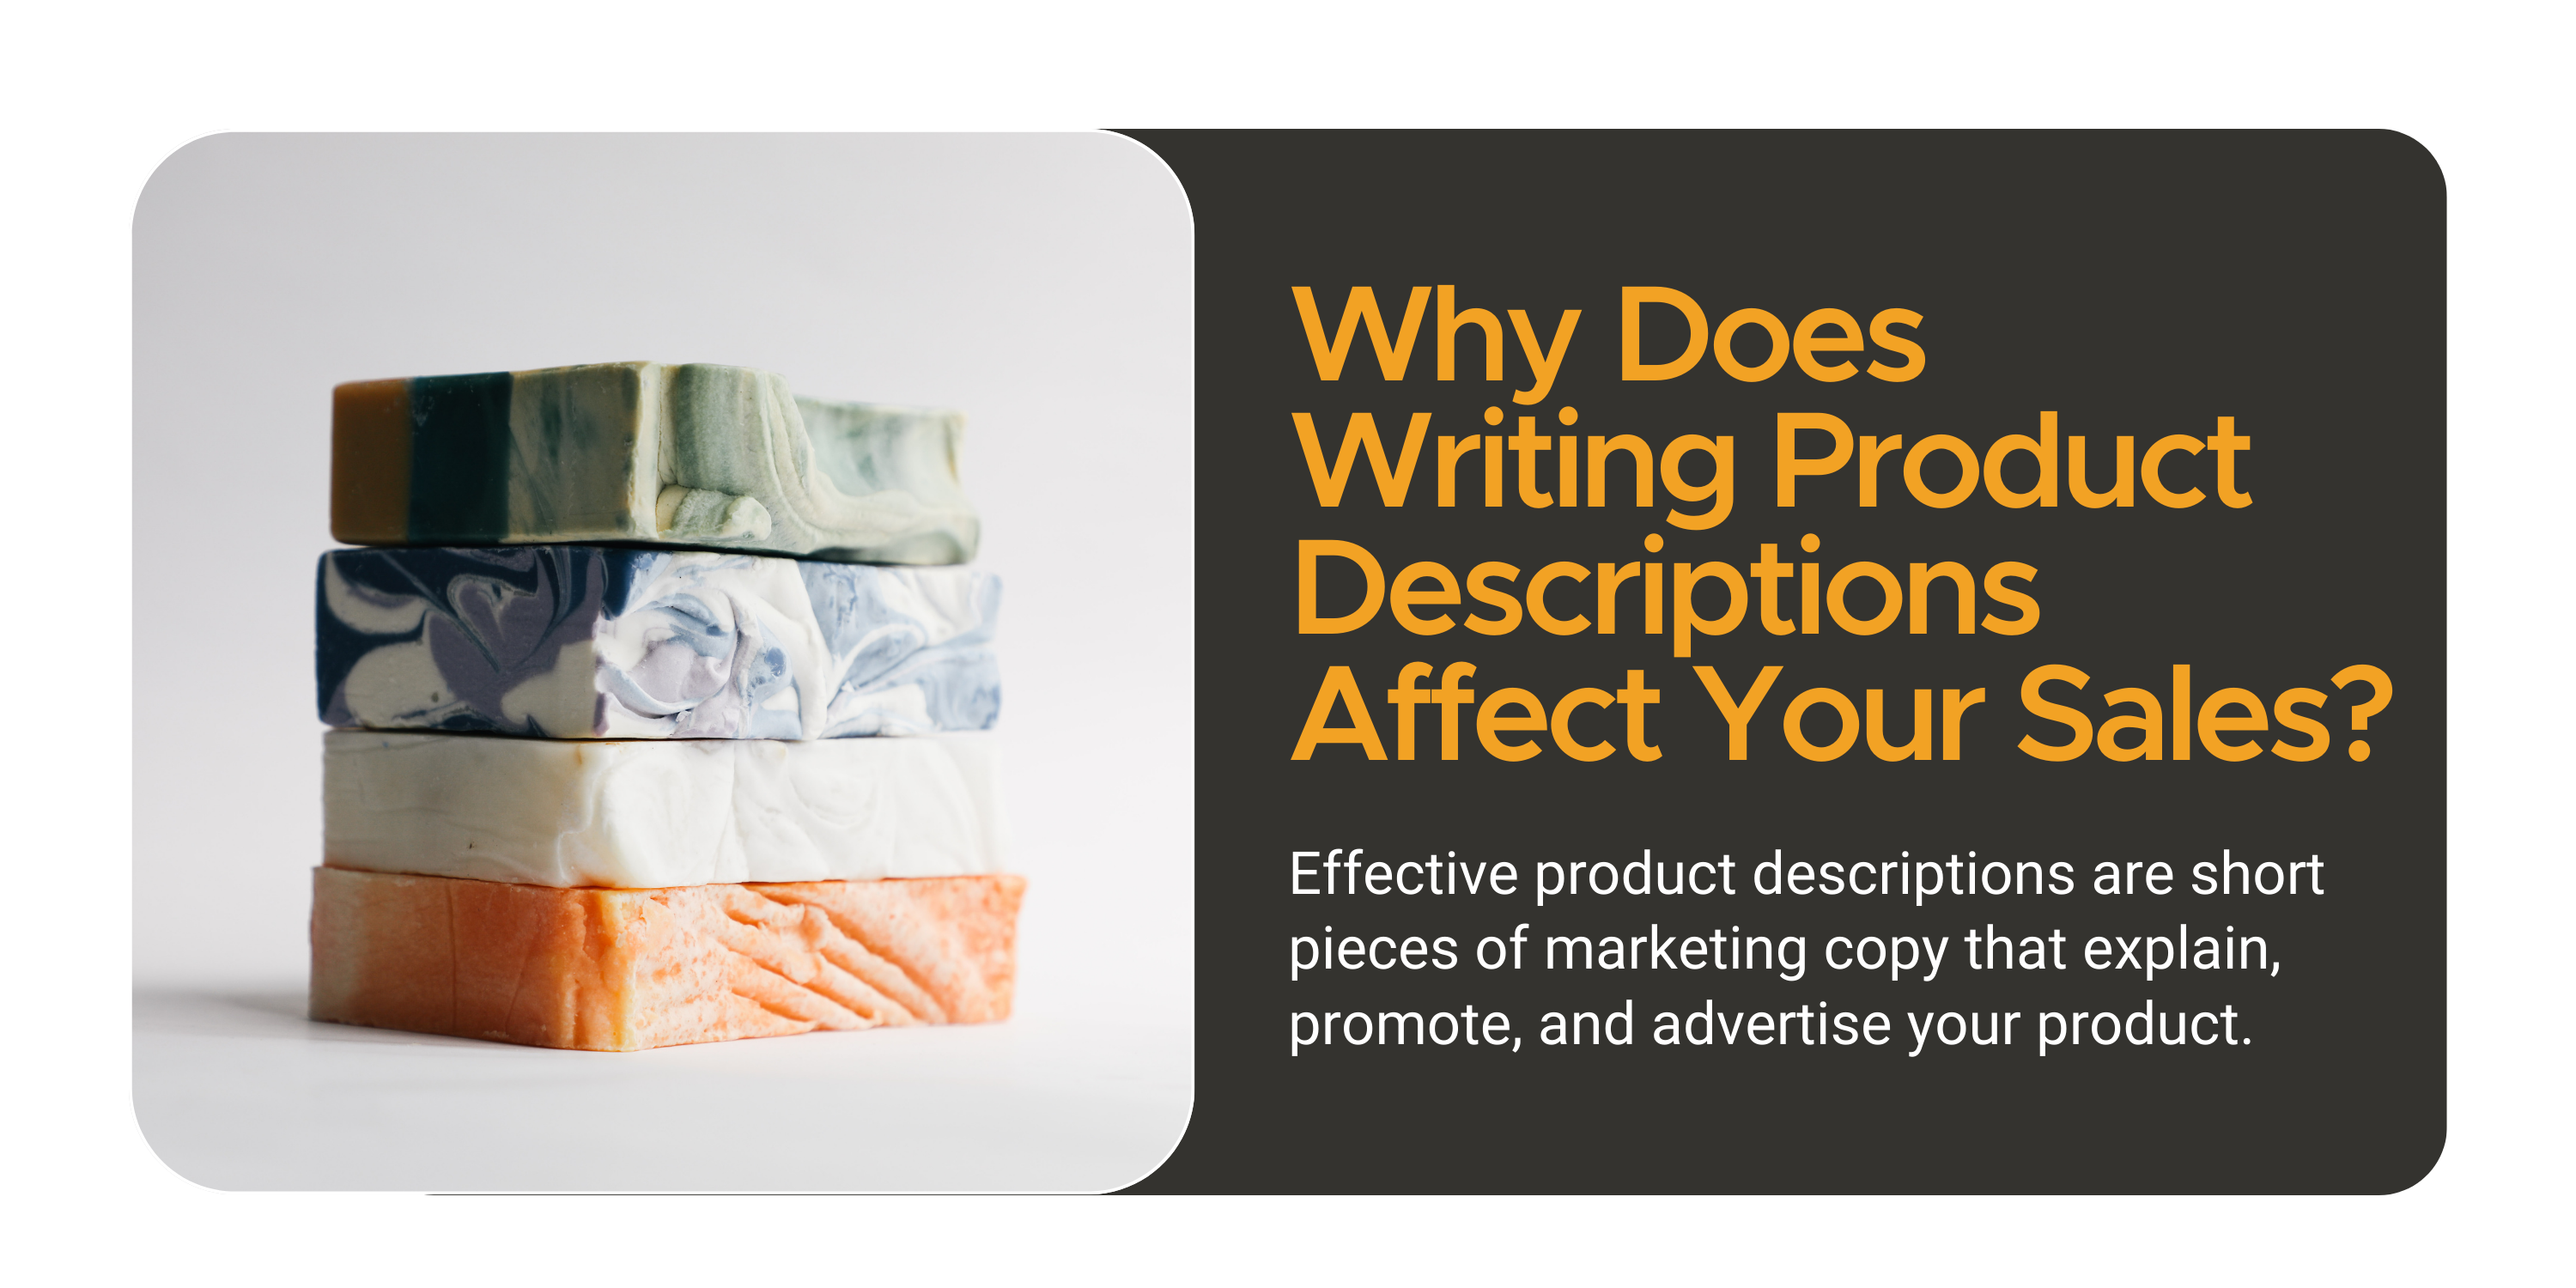 Description writer - Content writing for product description